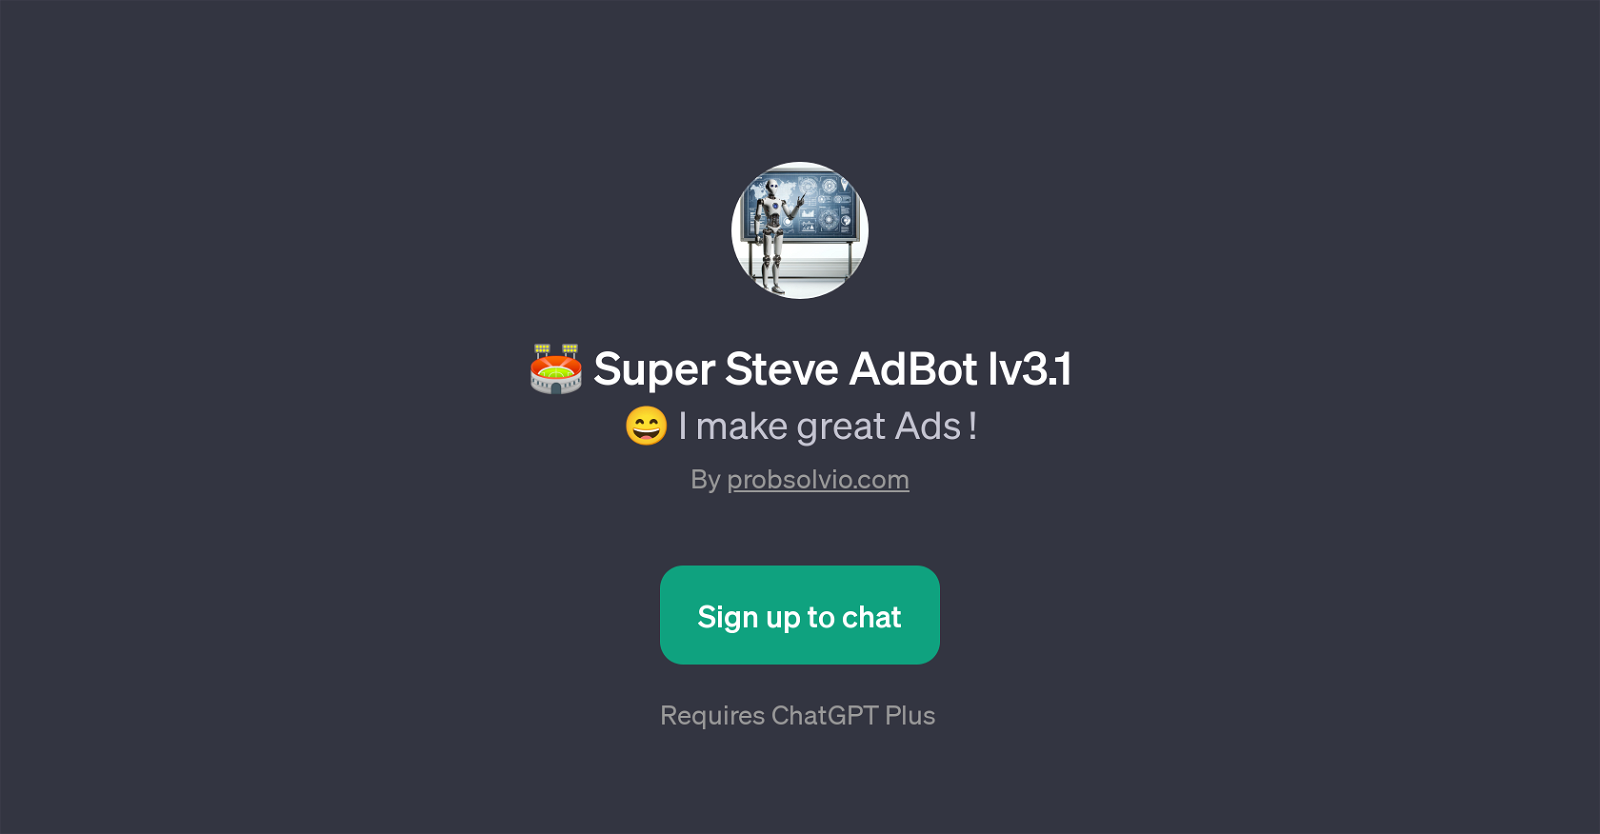 Super Steve AdBot lv3.1 website